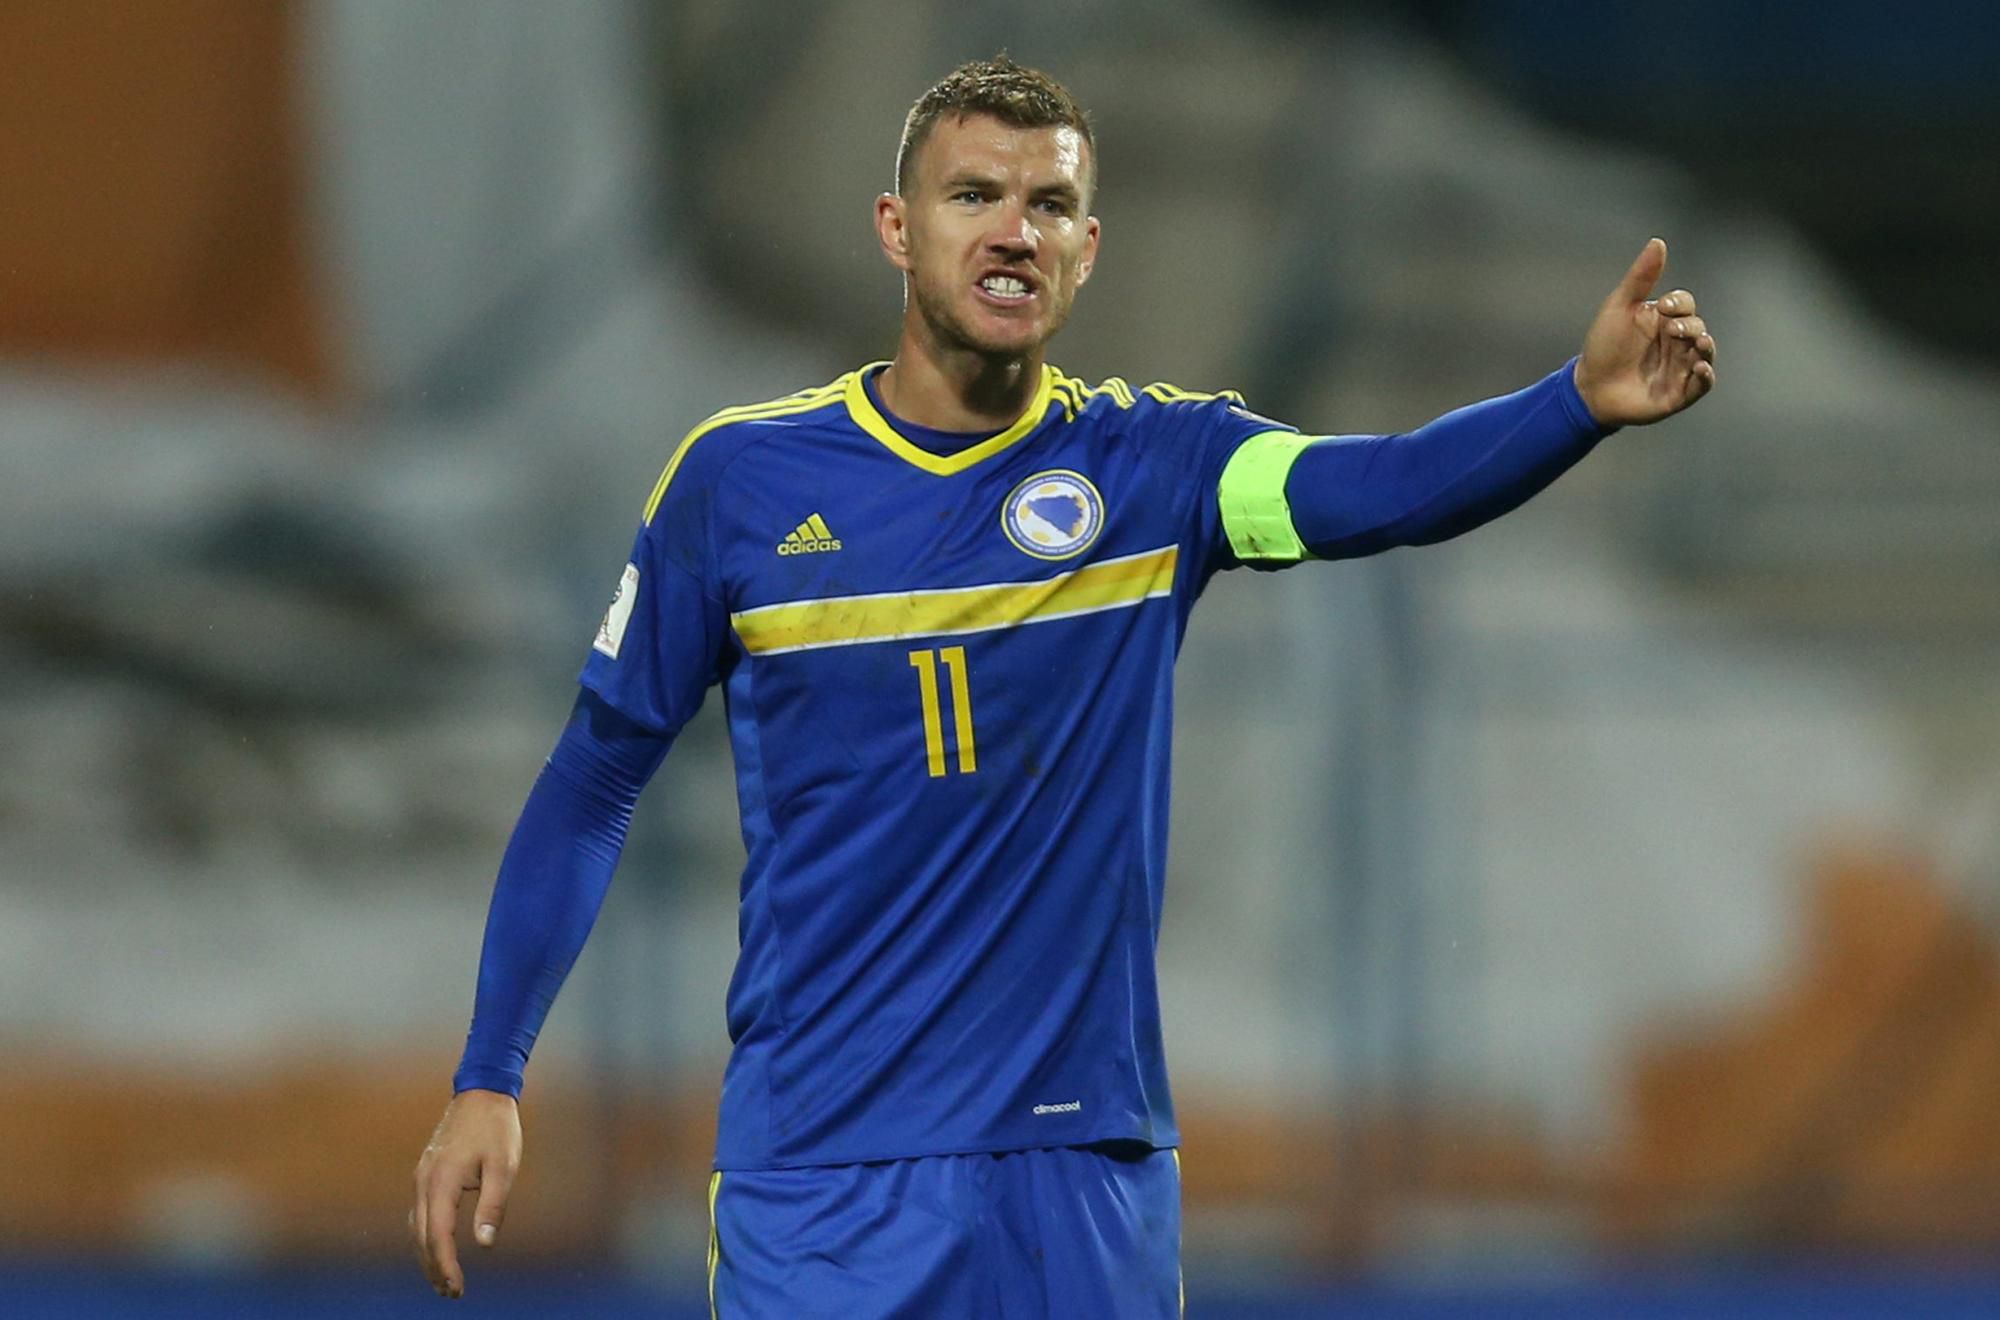 Proti odohraniu zápasu s Ruskom sa postavila aj hviezda Bosny a Hercegoviny, rekordér v počte štartov i gólov, Edin Džeko.